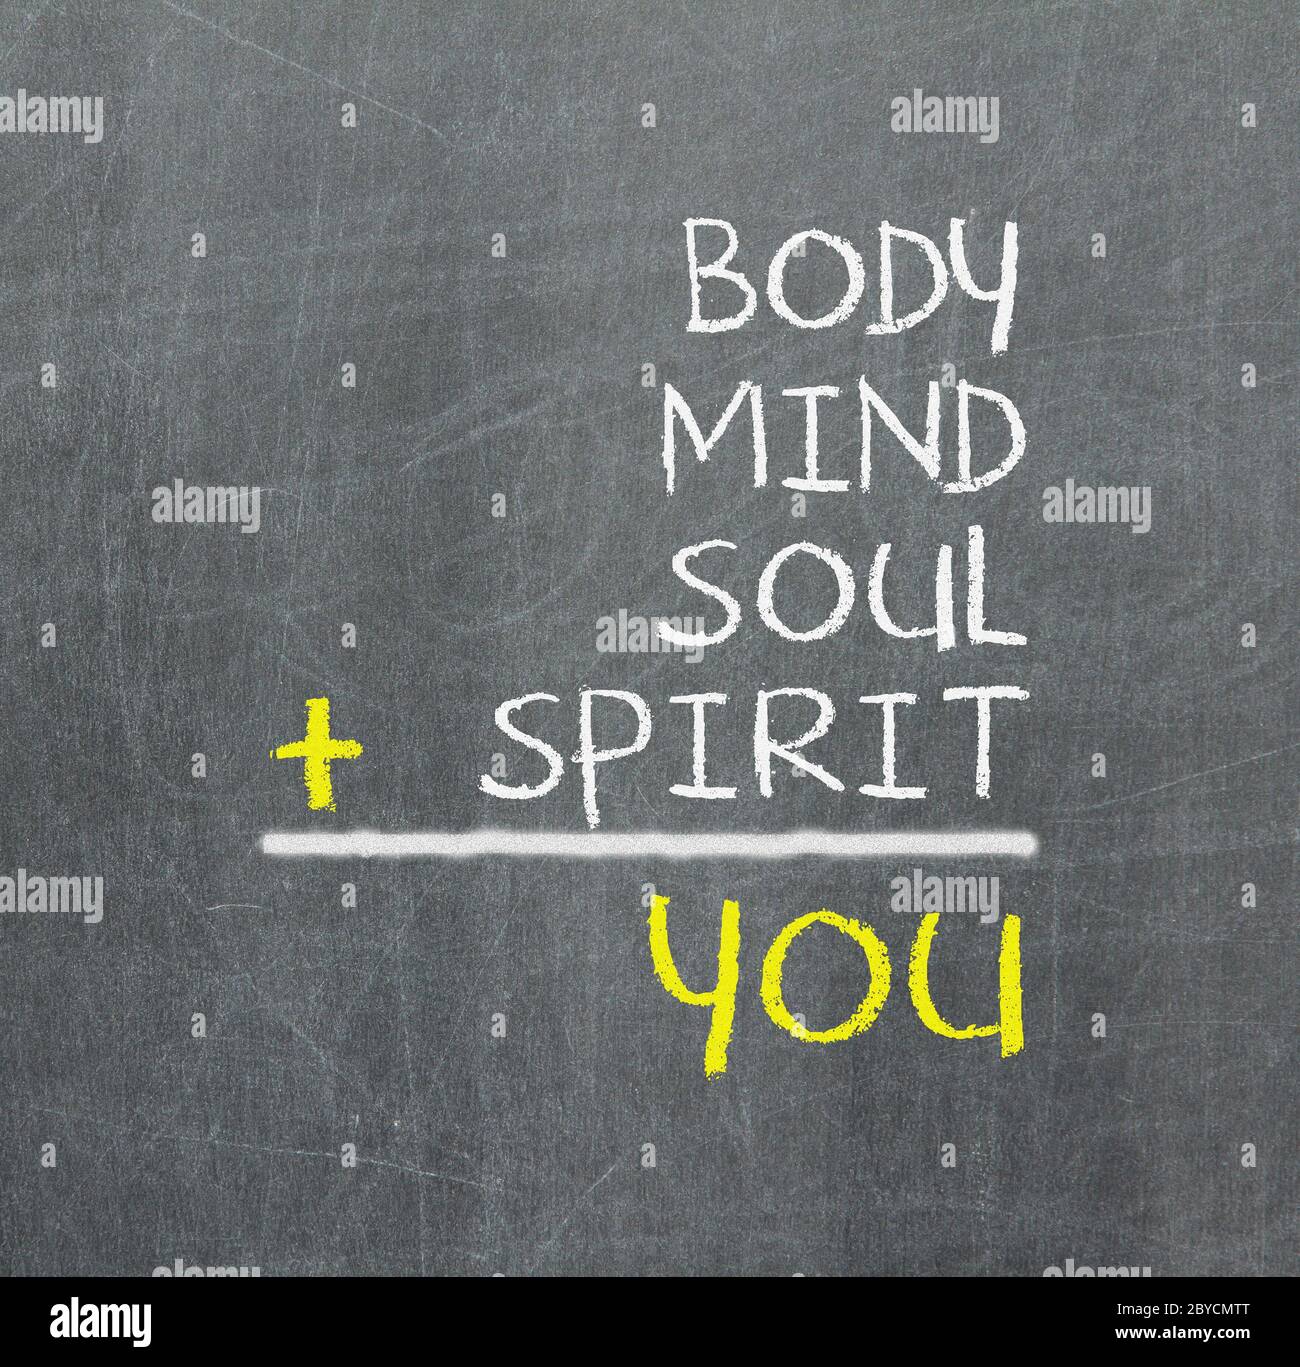 Tú, cuerpo, mente, alma, espíritu - un mapa mental simple Foto de stock